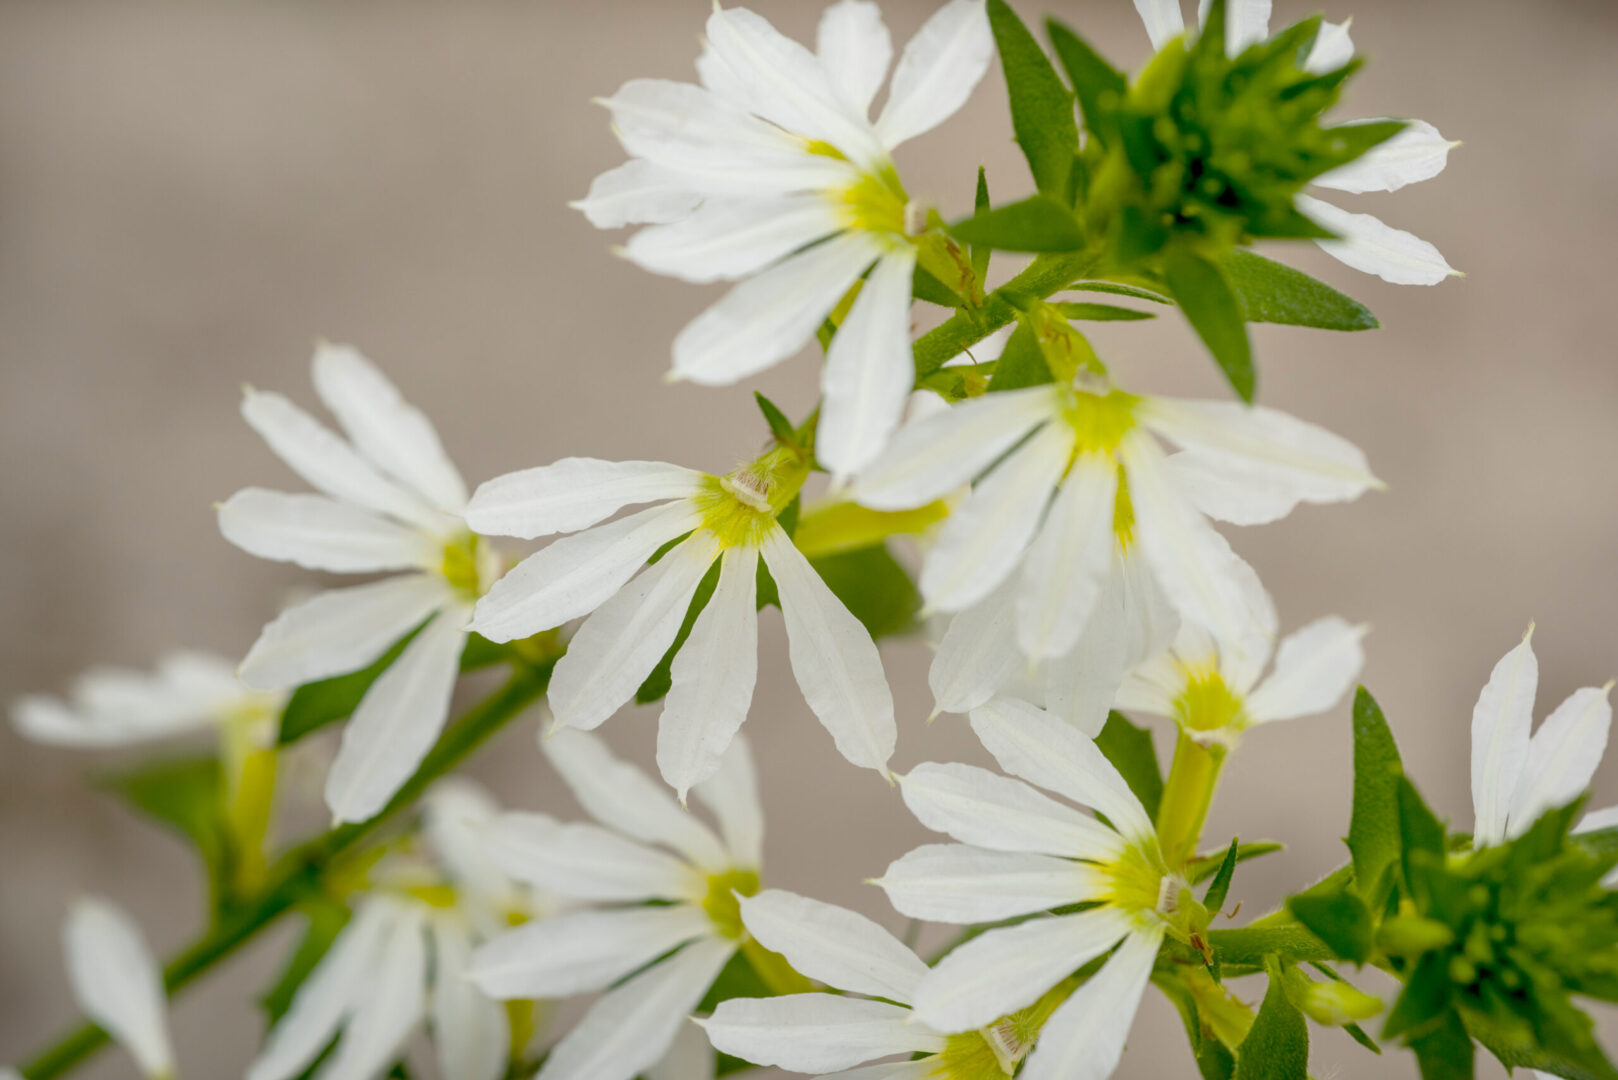 A white Scaevola flower in a garden